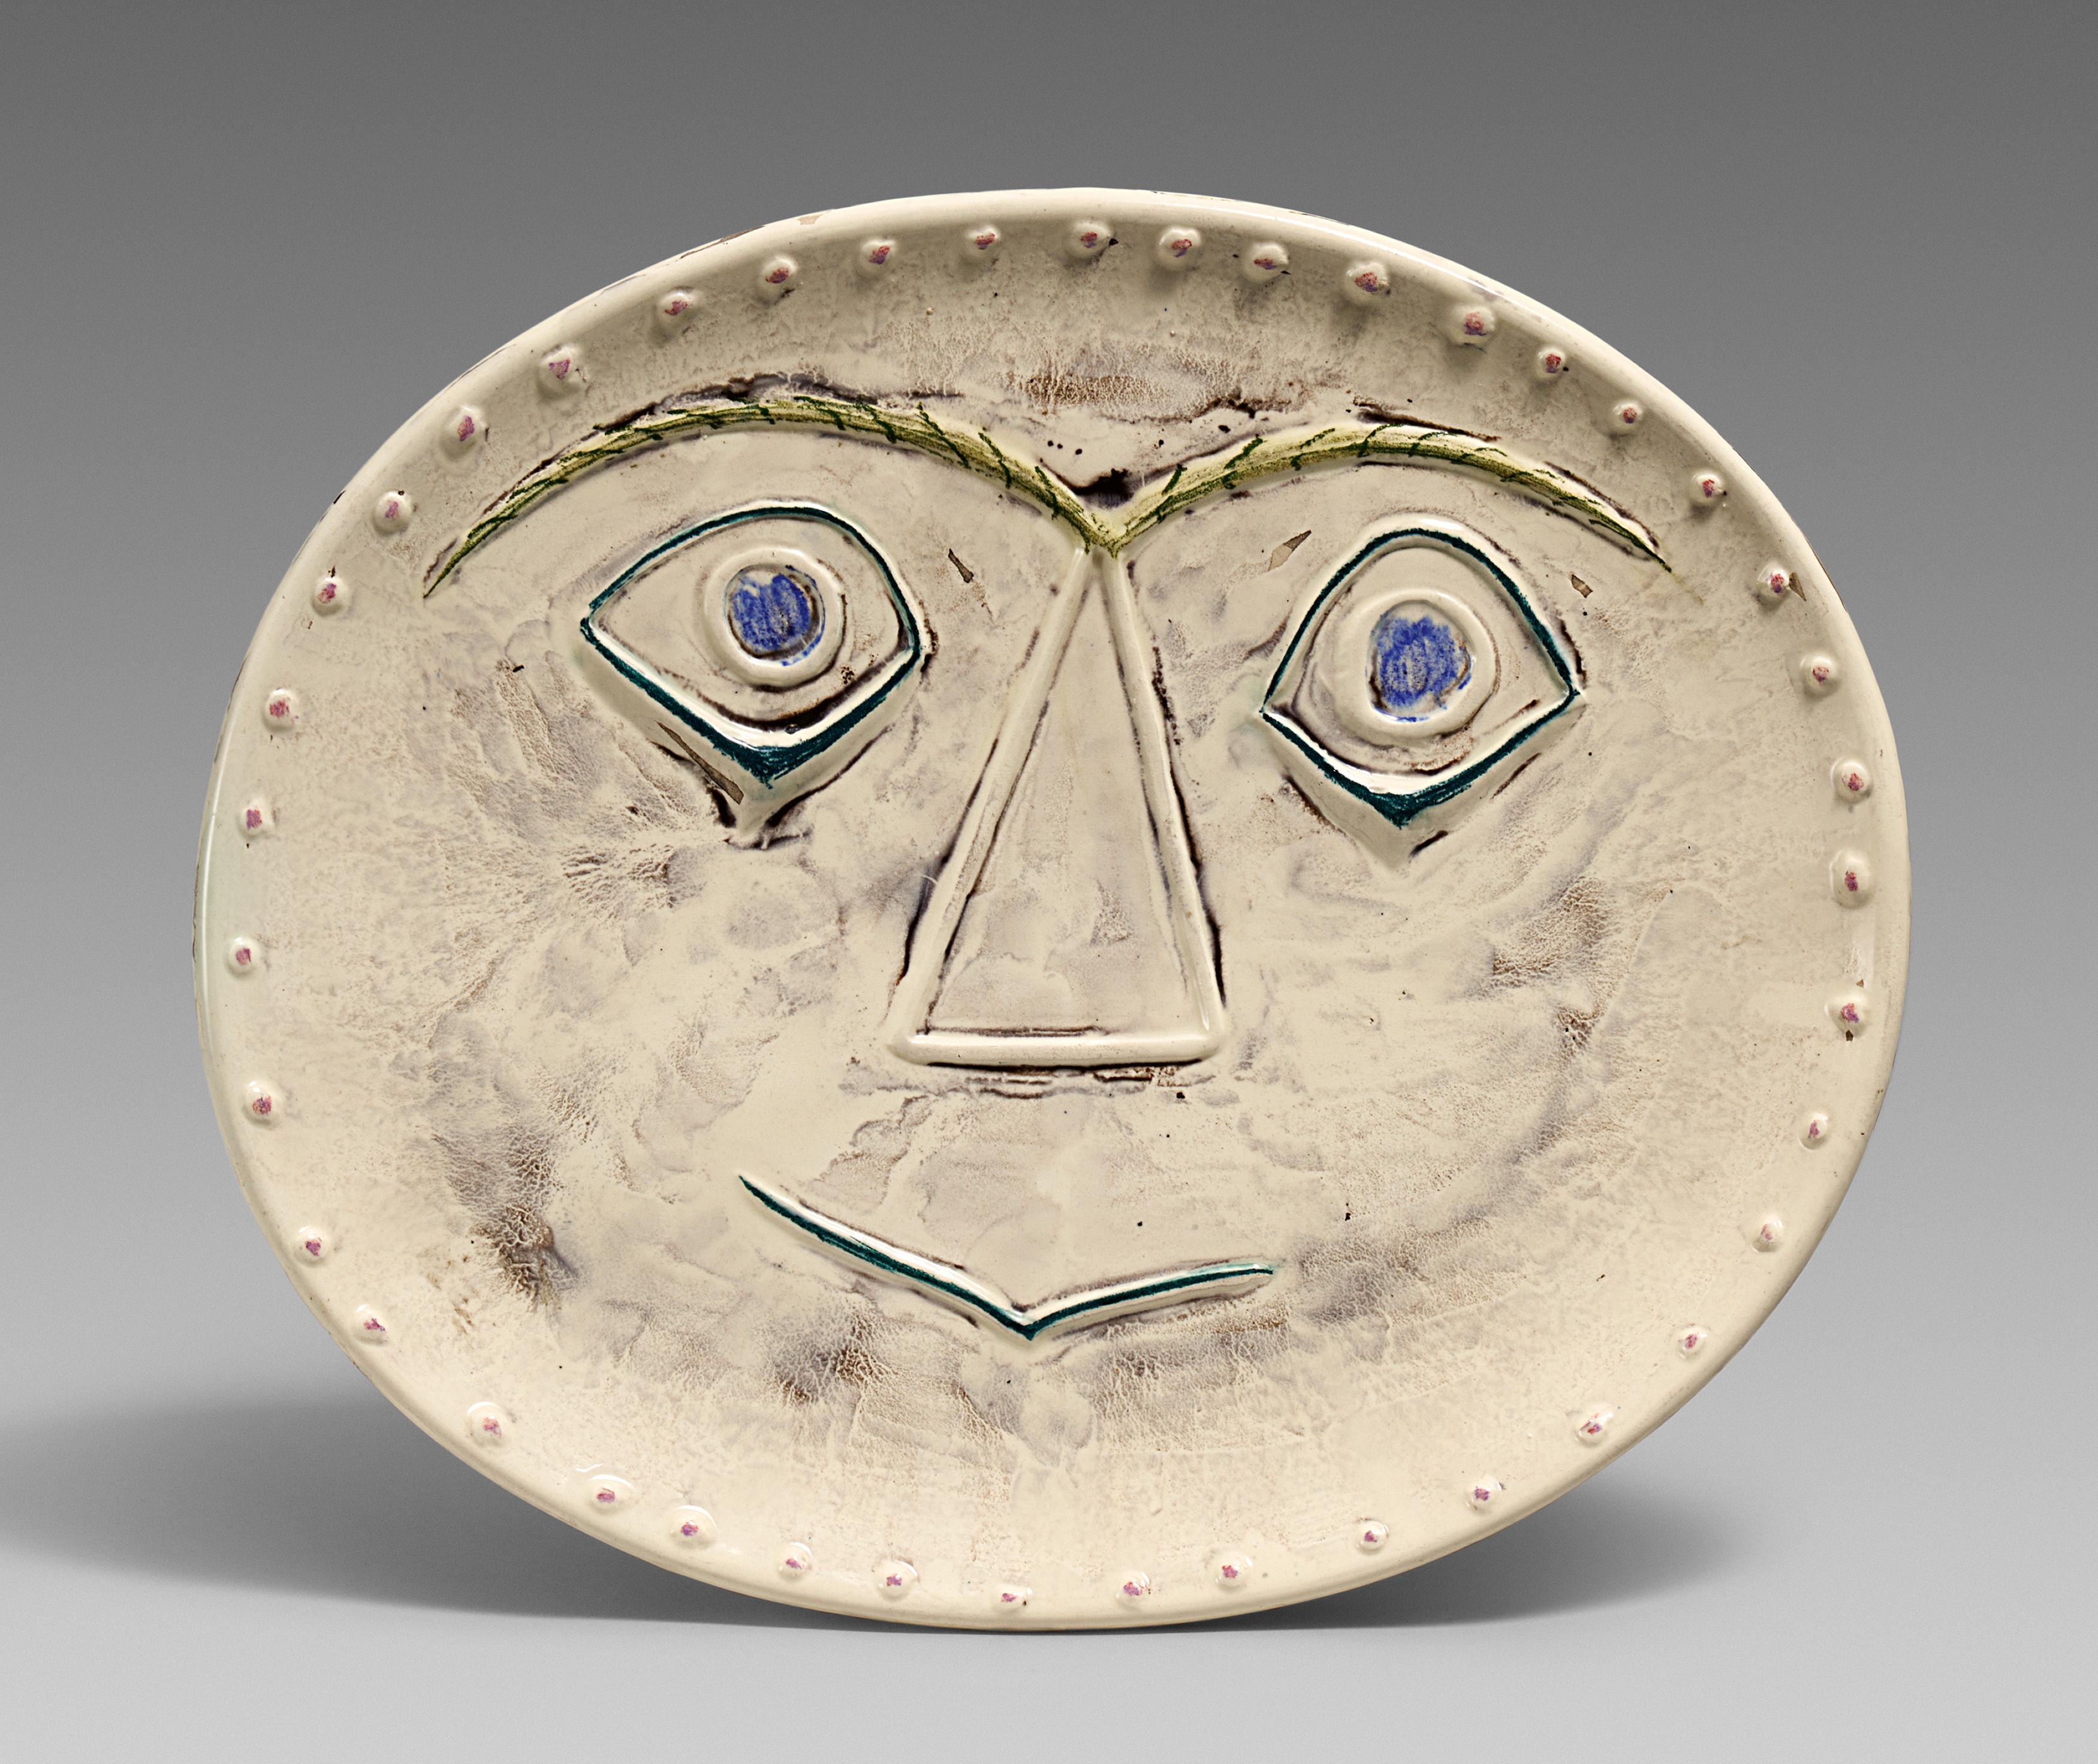 Pablo Picasso Ceramics: Geometric Face